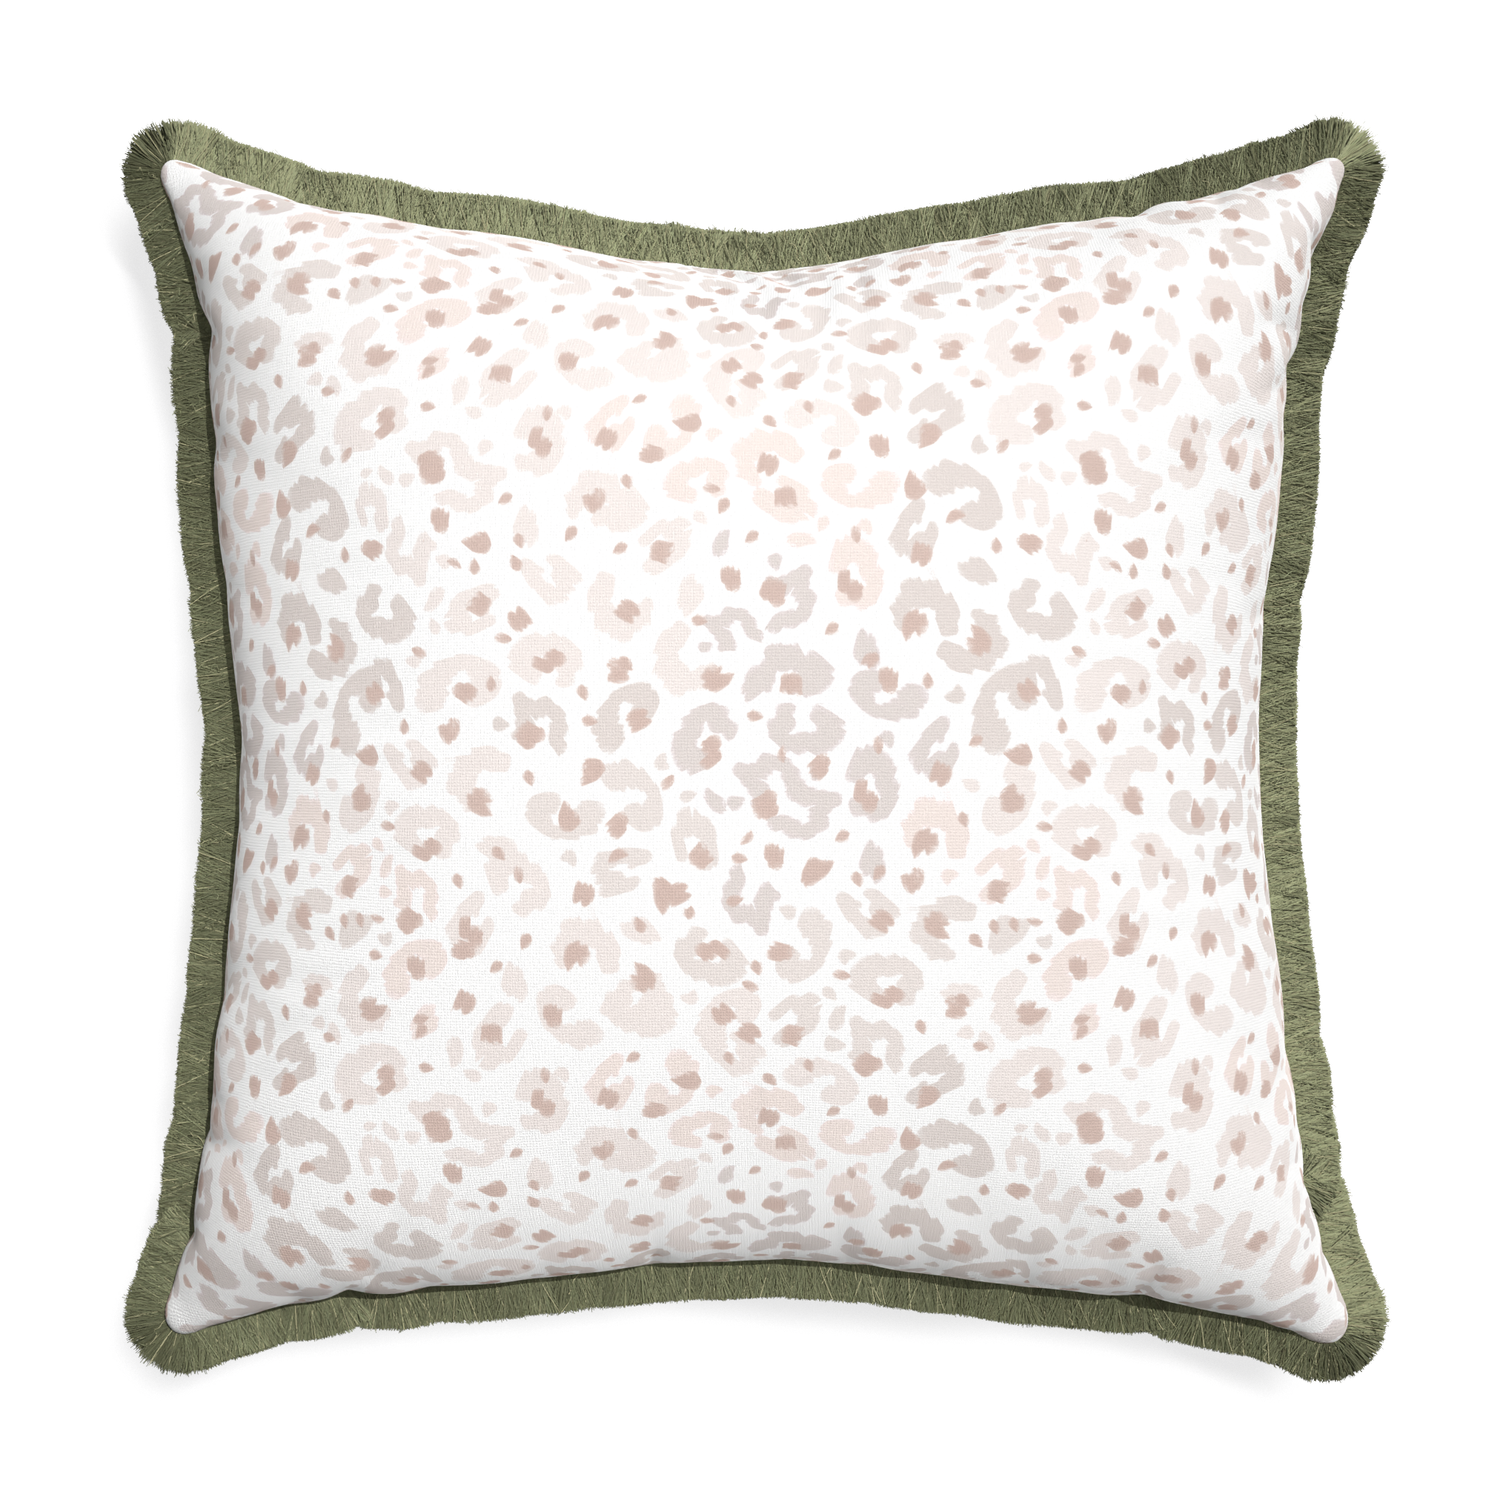 Euro-sham rosie custom pillow with sage fringe on white background